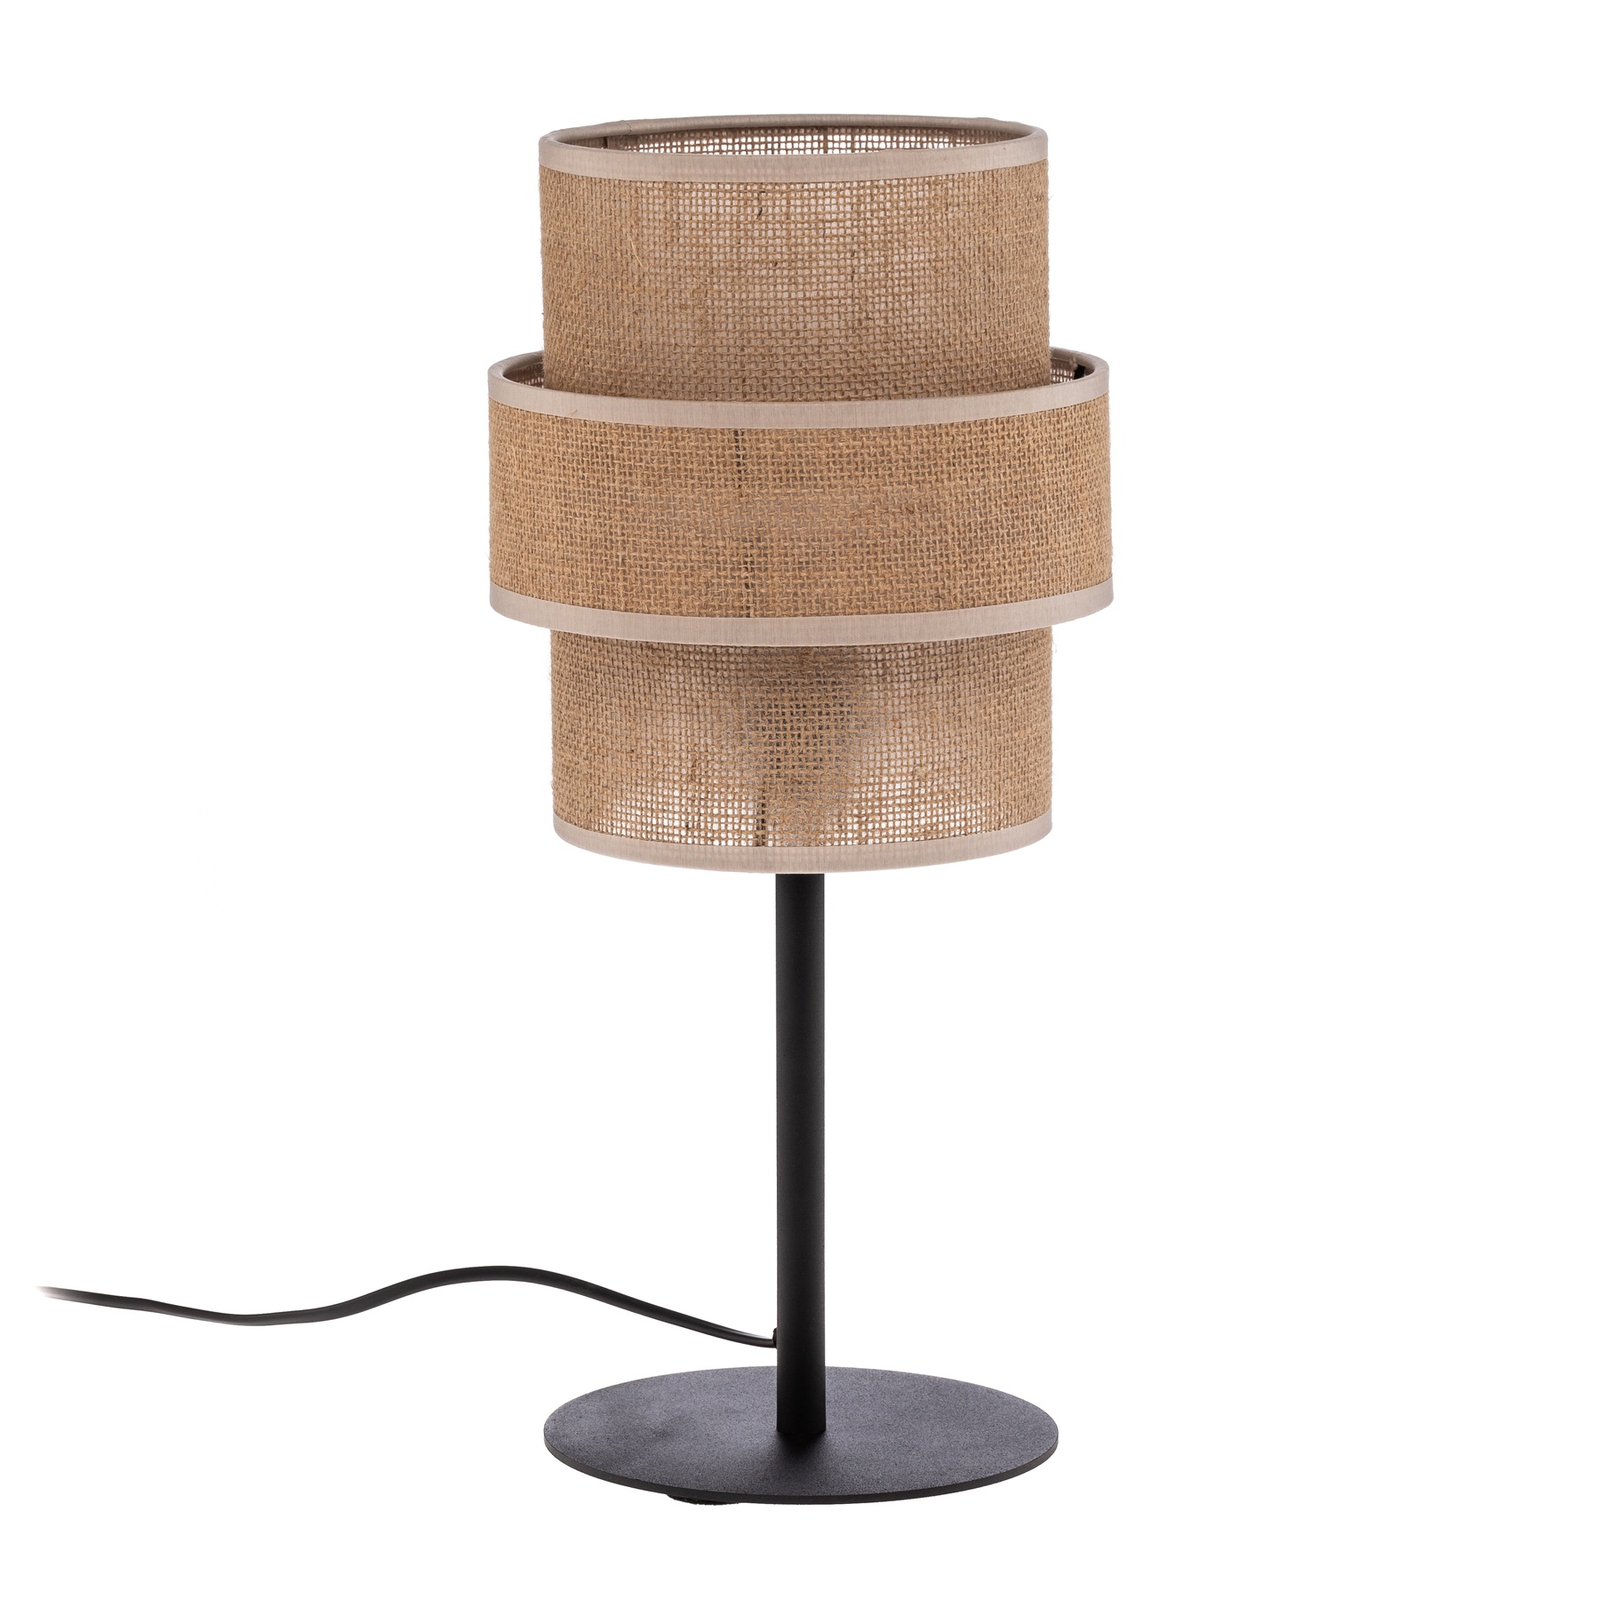 Calisto bordslampa, jute, naturbrun, höjd 38 cm